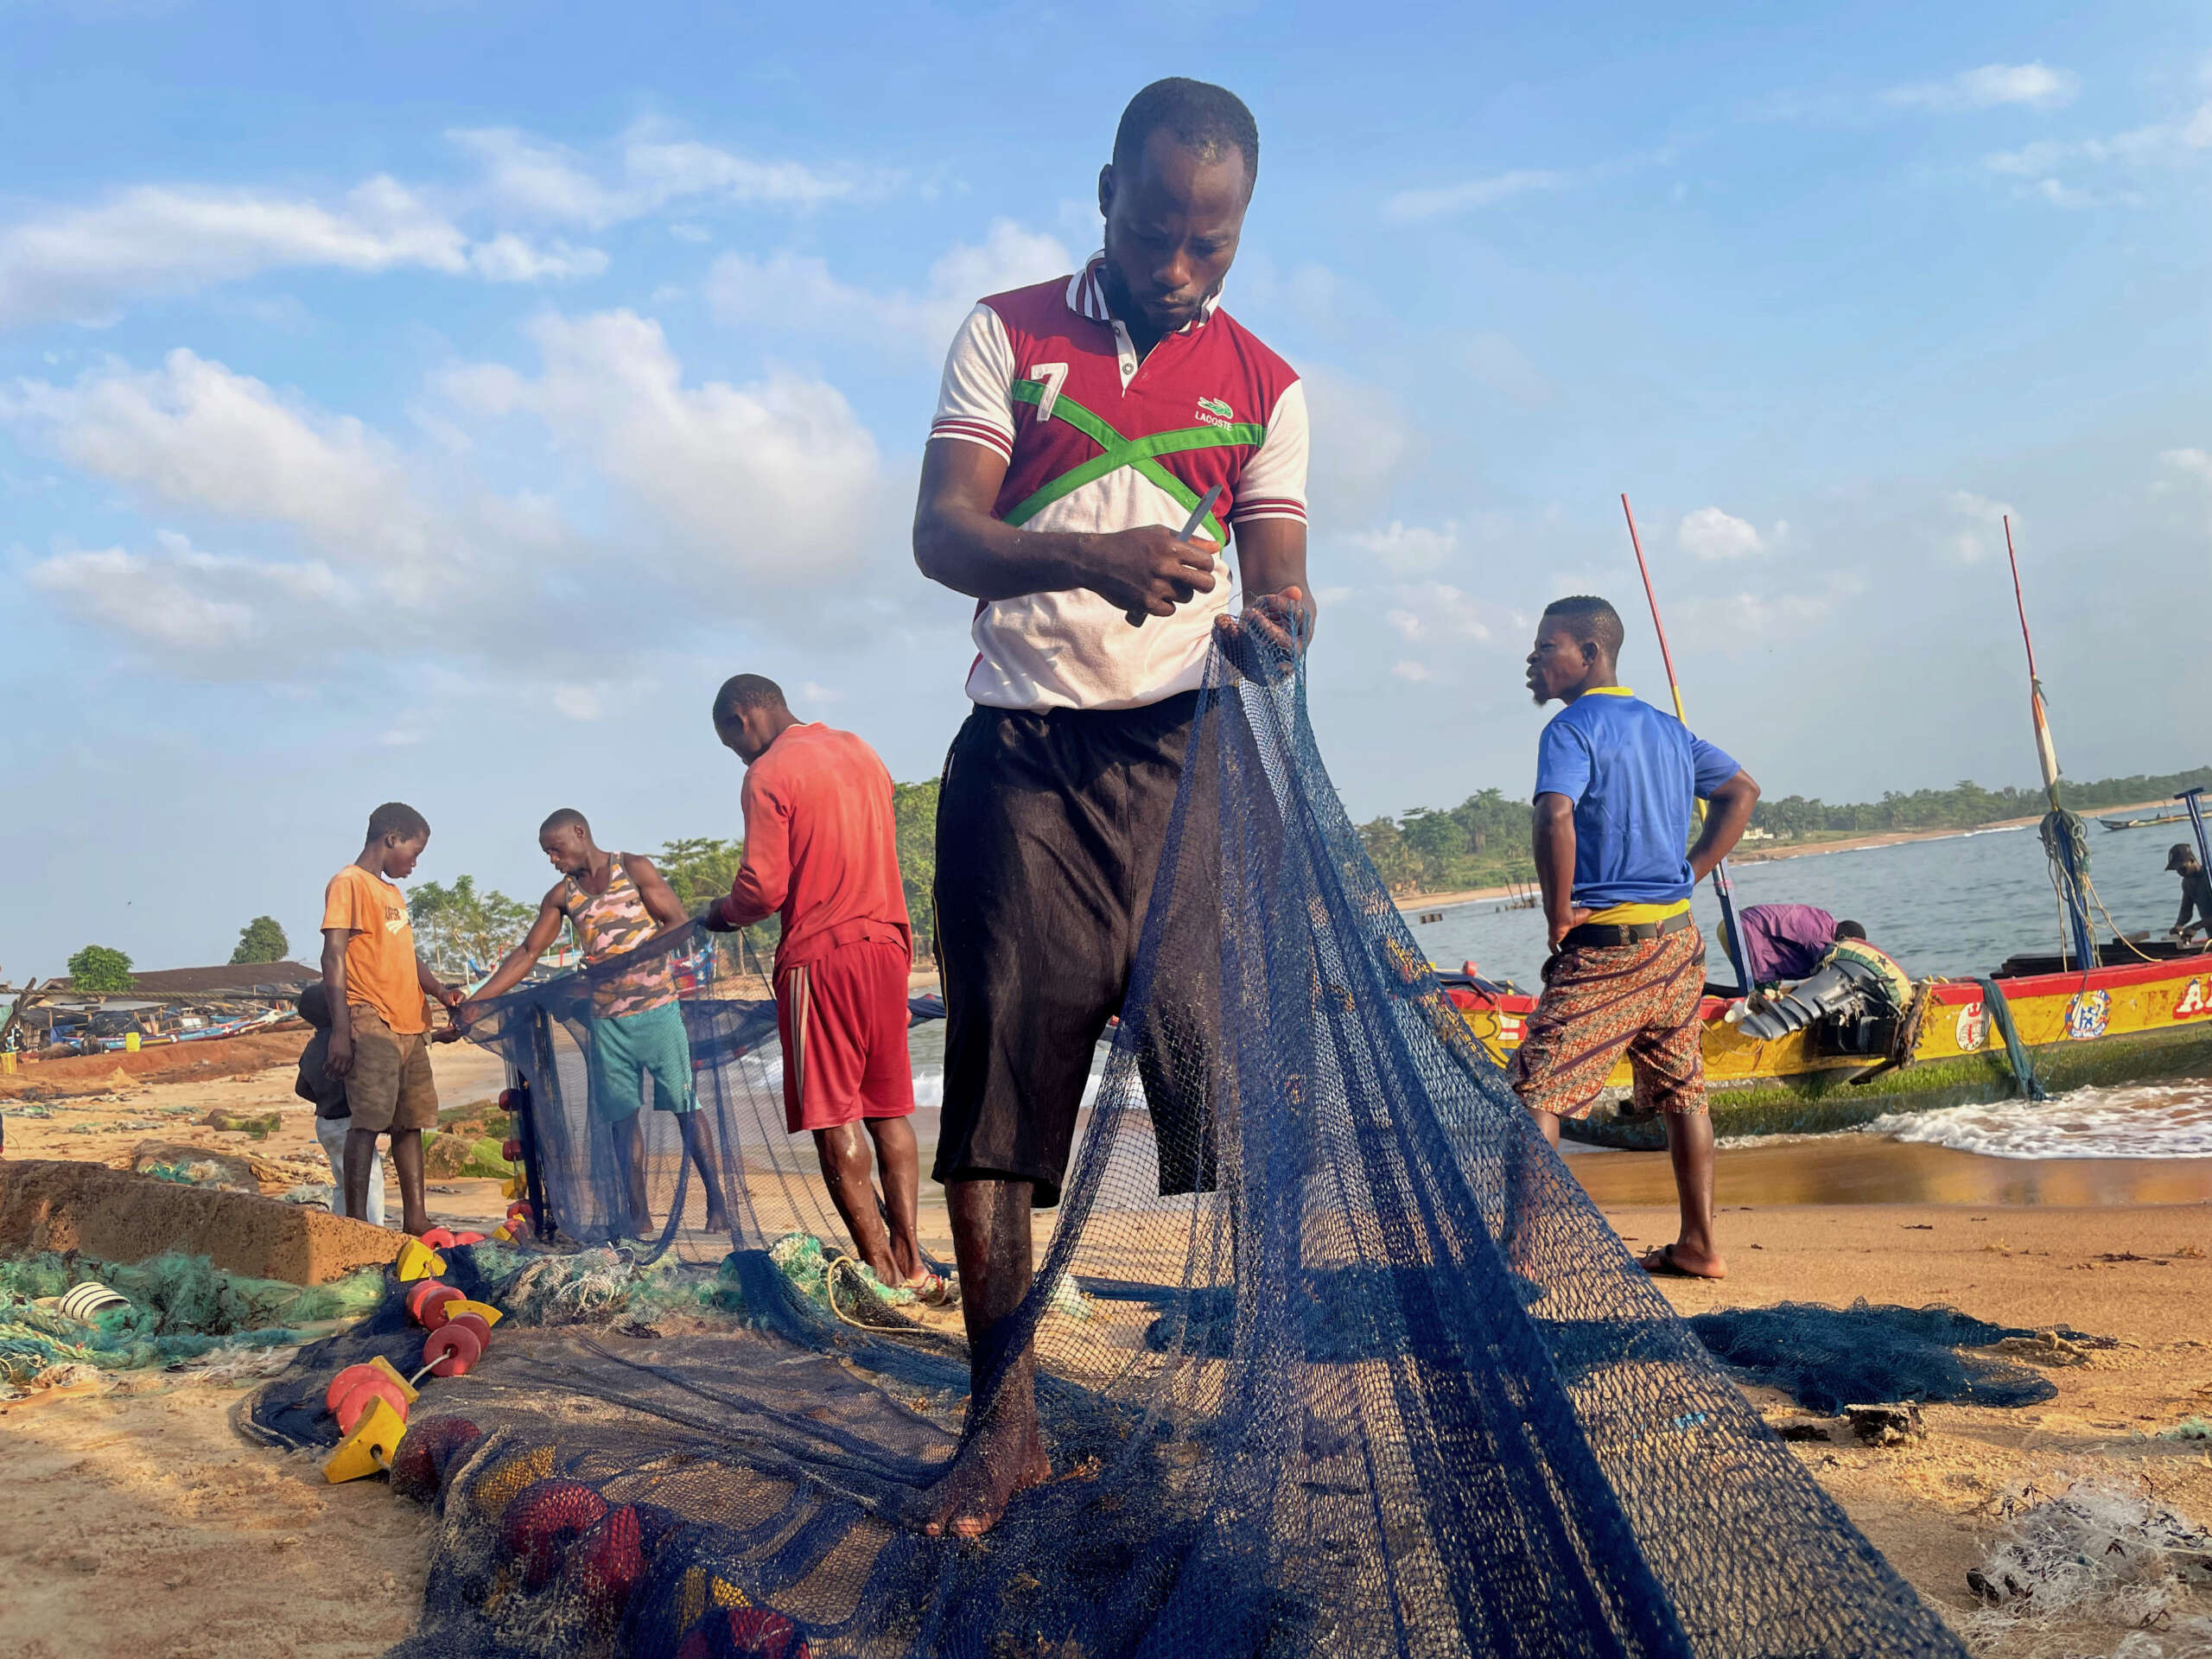 Pêcheurs réparent des filets sur la plage de Grand Béréby, Côte d'Ivoire - par Rich Press